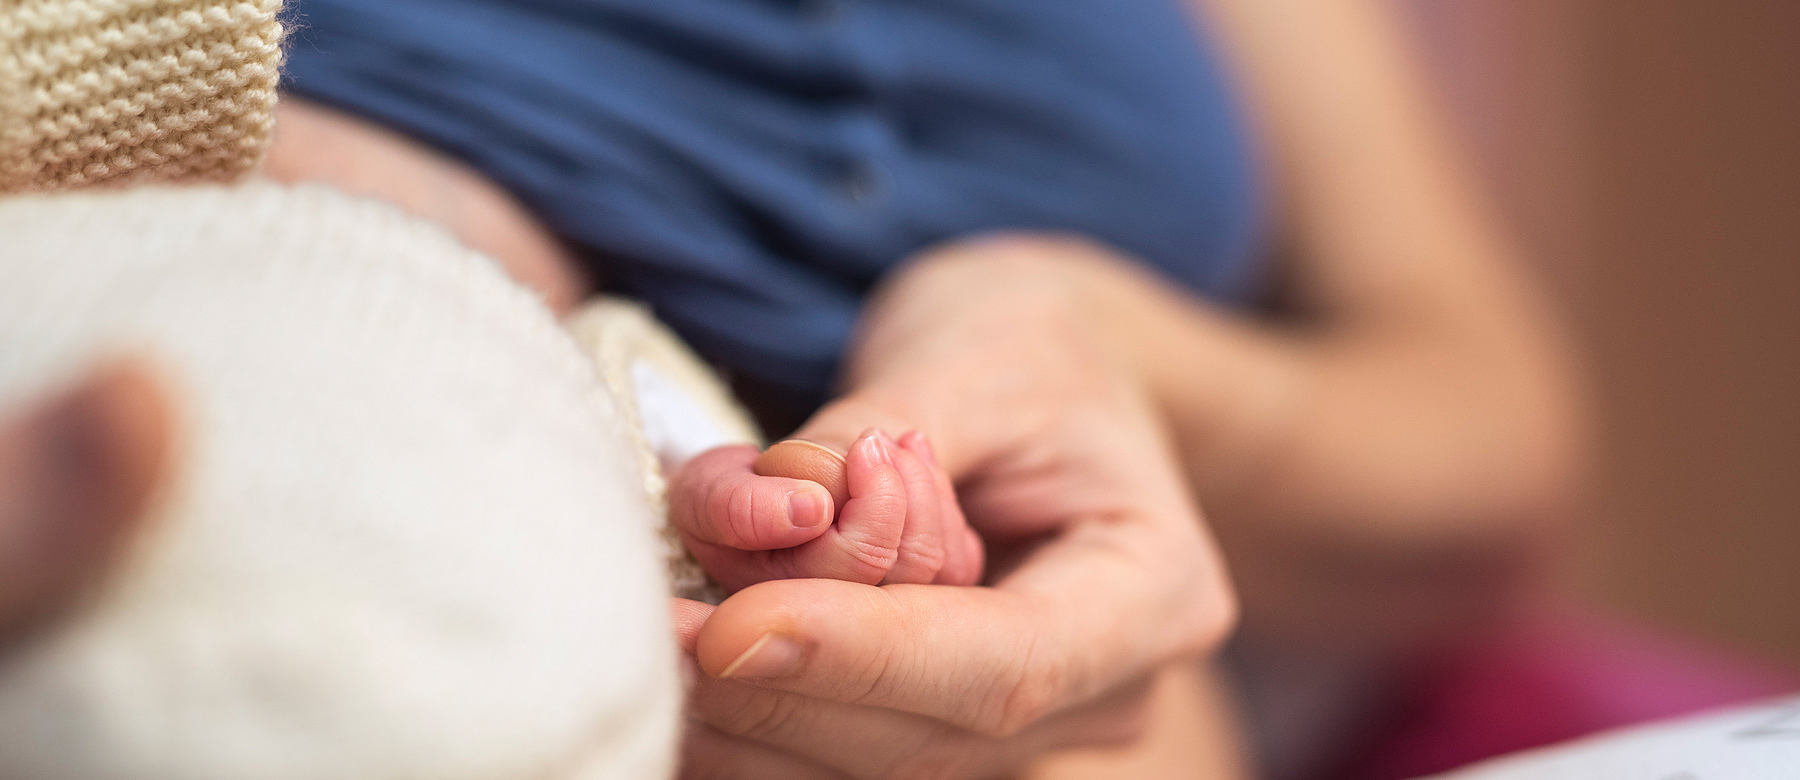 Mutter hält ihr Neugeborenes in den Armen und umgreift mit ihren Fingern die Hand ihres Kindes.